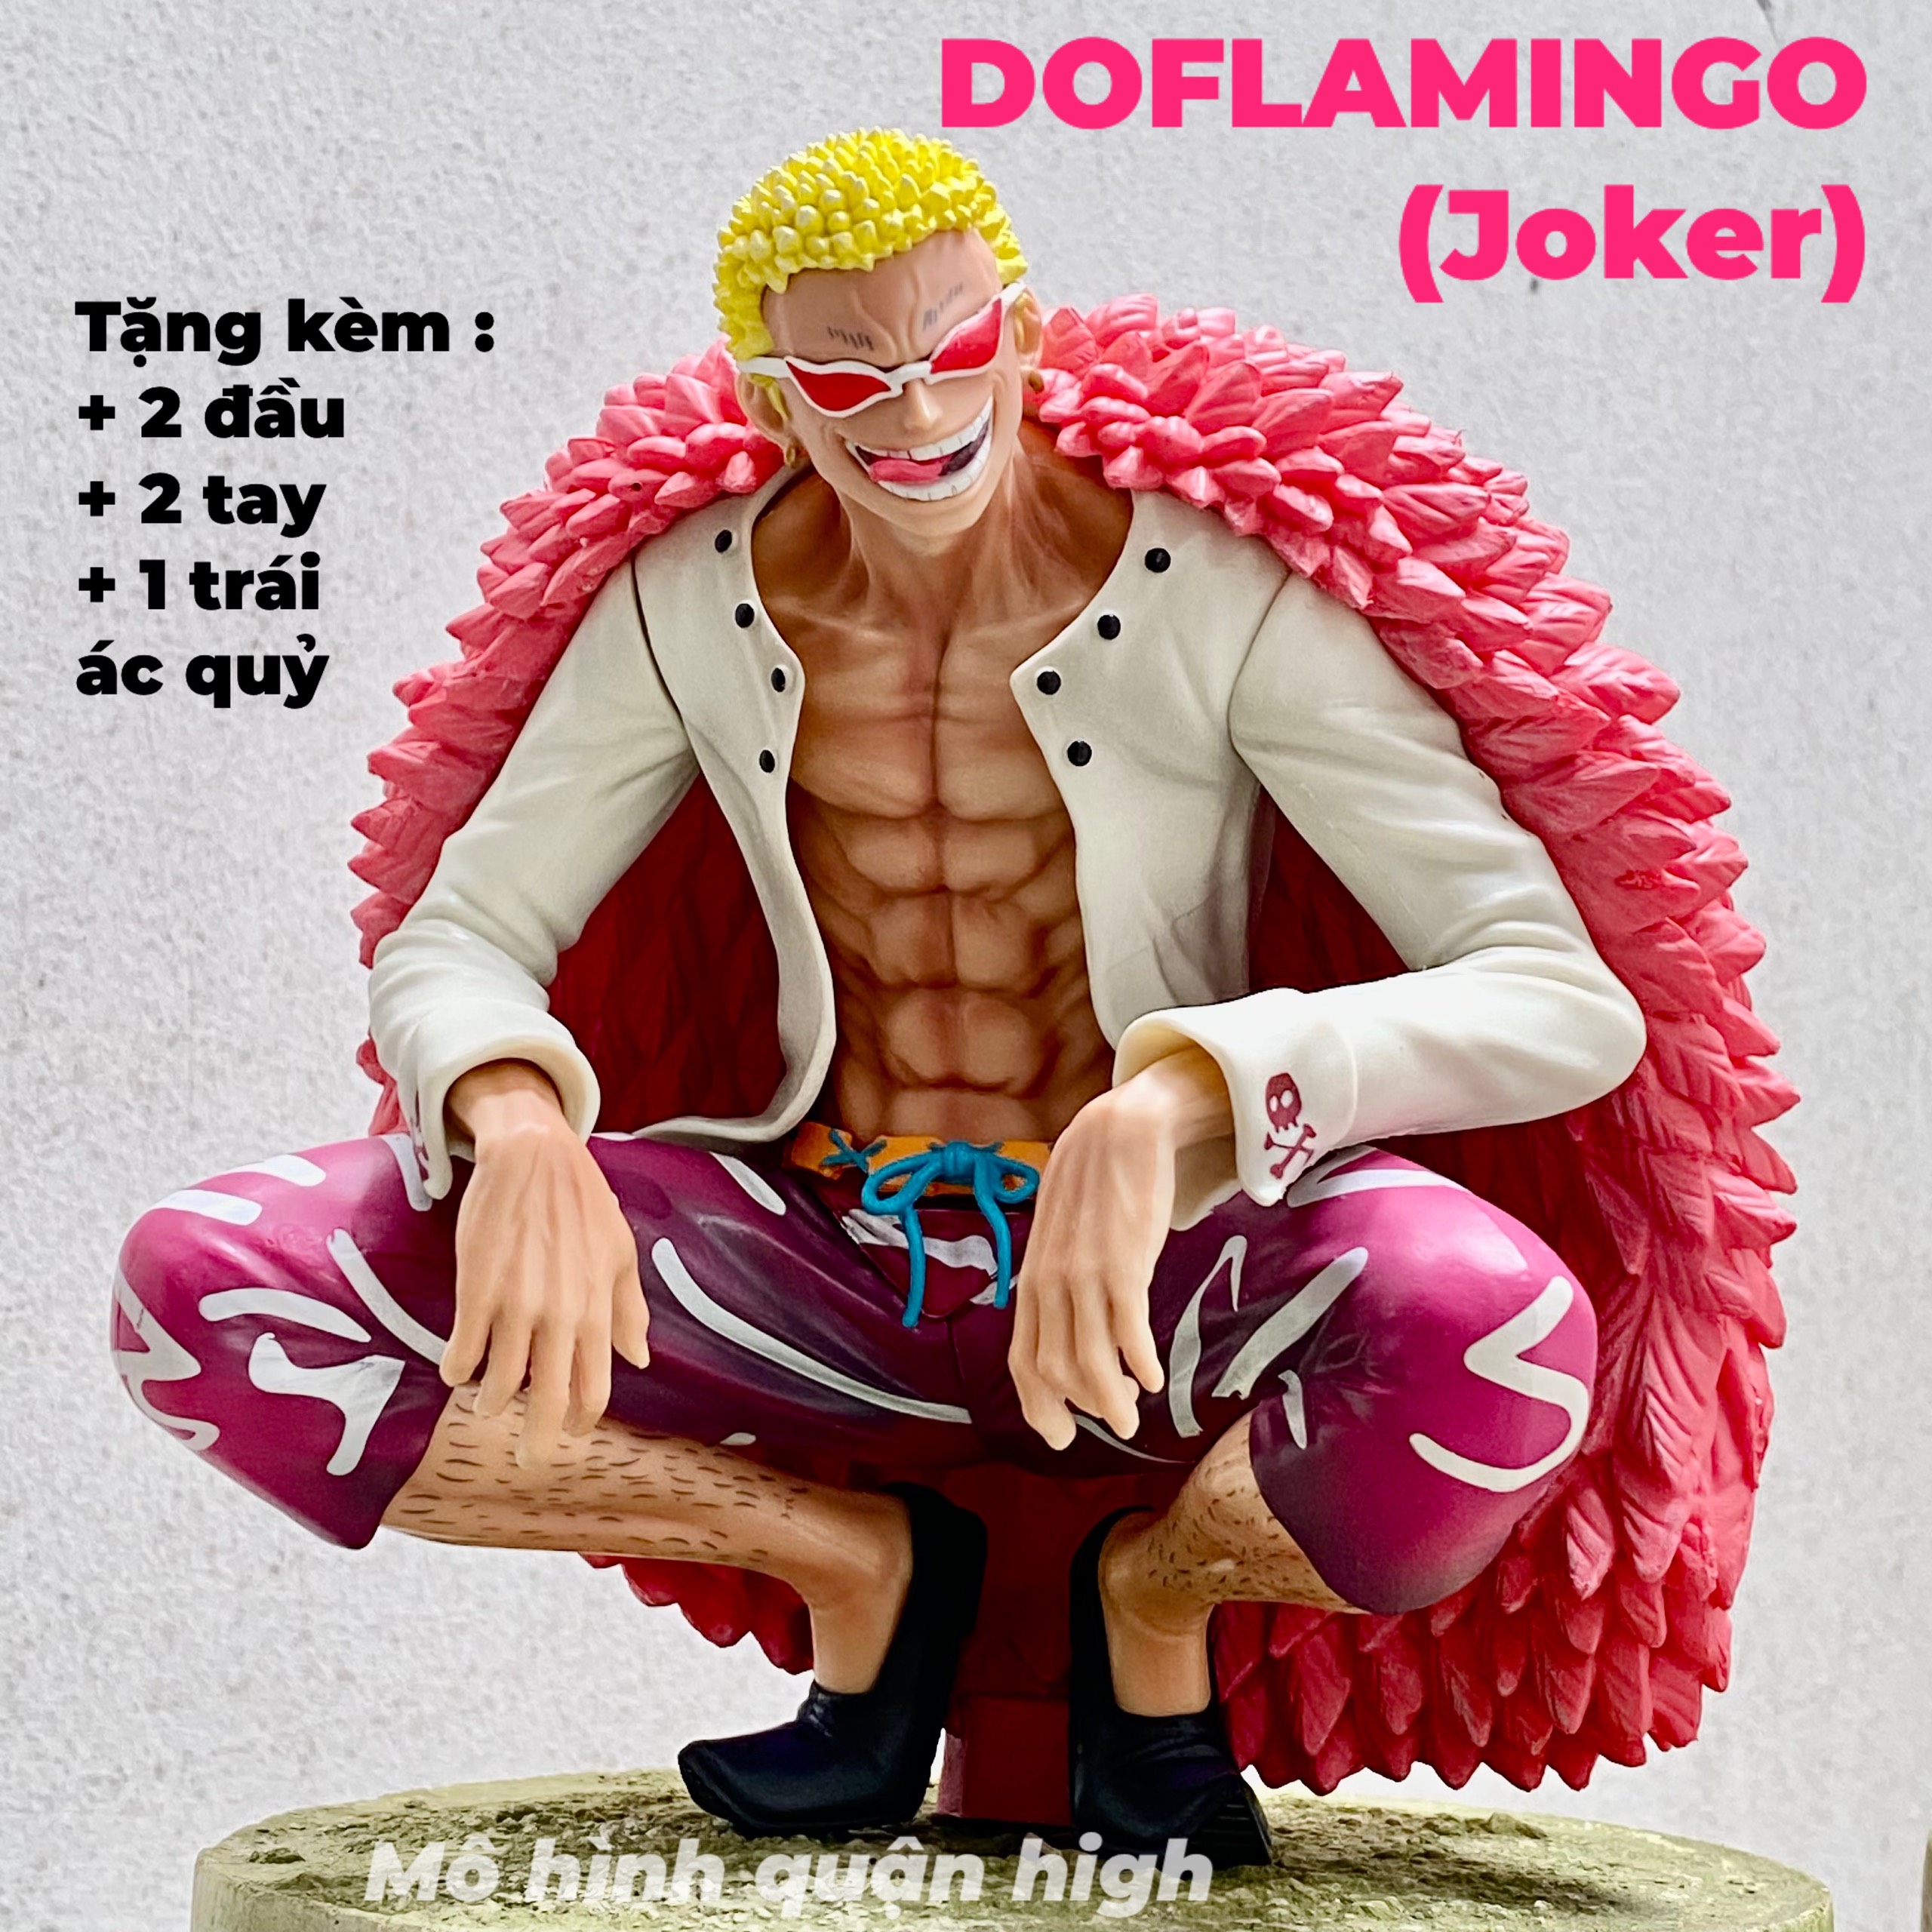 Mô hình Doflamingo GK  bản đẹp  Mô hình One Piece  Figure Doflamingo   Giá Tiki khuyến mãi 1590000đ  Mua ngay  Tư vấn mua sắm  tiêu dùng  trực tuyến Bigomart